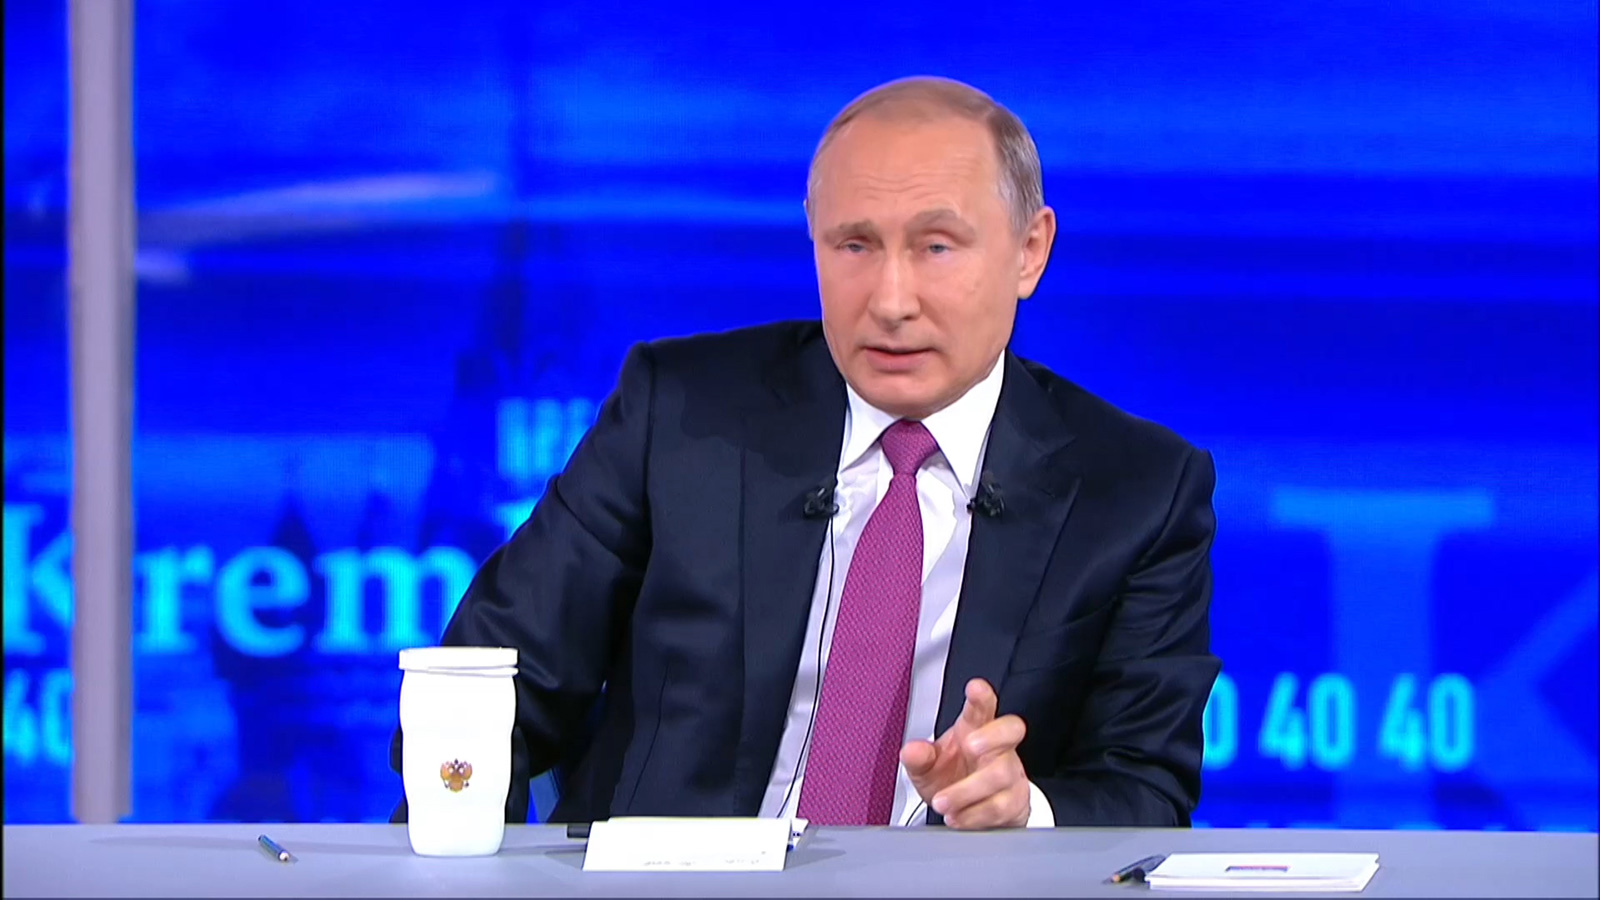 ينظر الروس أنفسهم إلى ميدفيديف شريك بوتين في السلطة على أنه مجرد ديكور ديمقراطي، بينما السلطة الحقيقية للقيصر بوتين، كما تسميه وسائل الإعلام الغربية